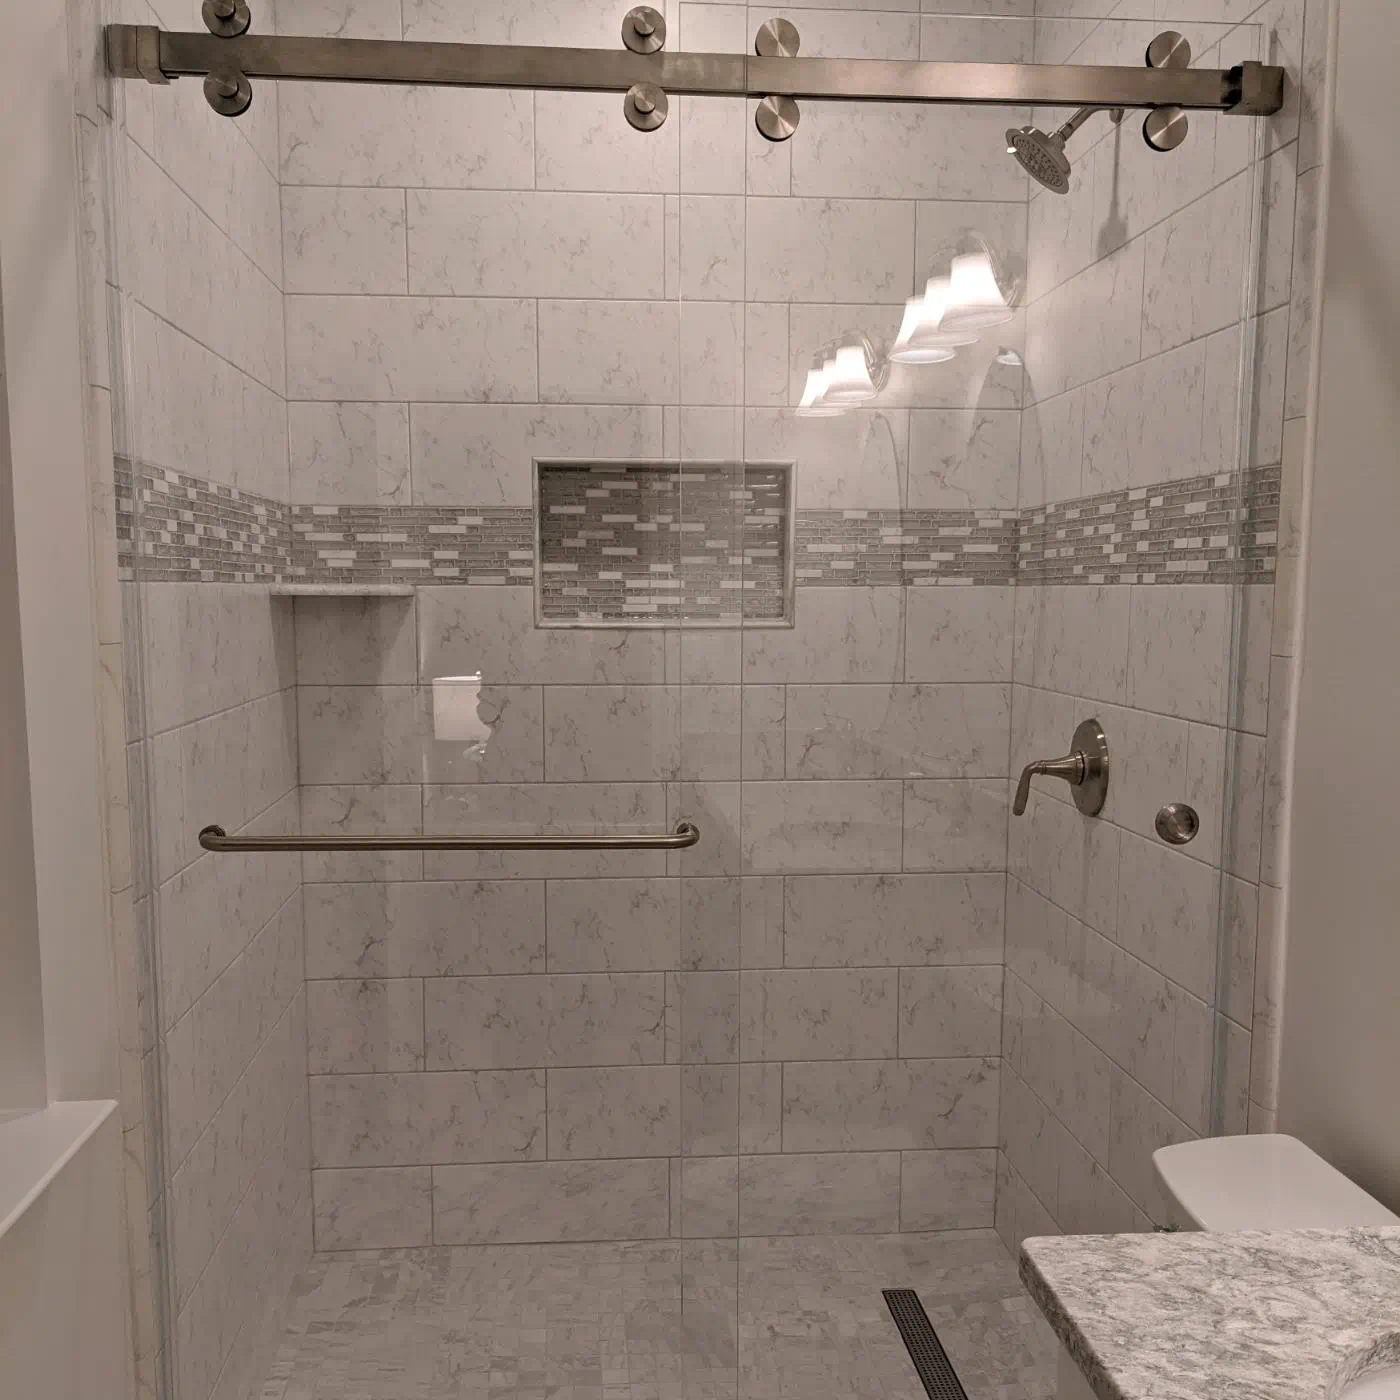 Bathroom Complete Update